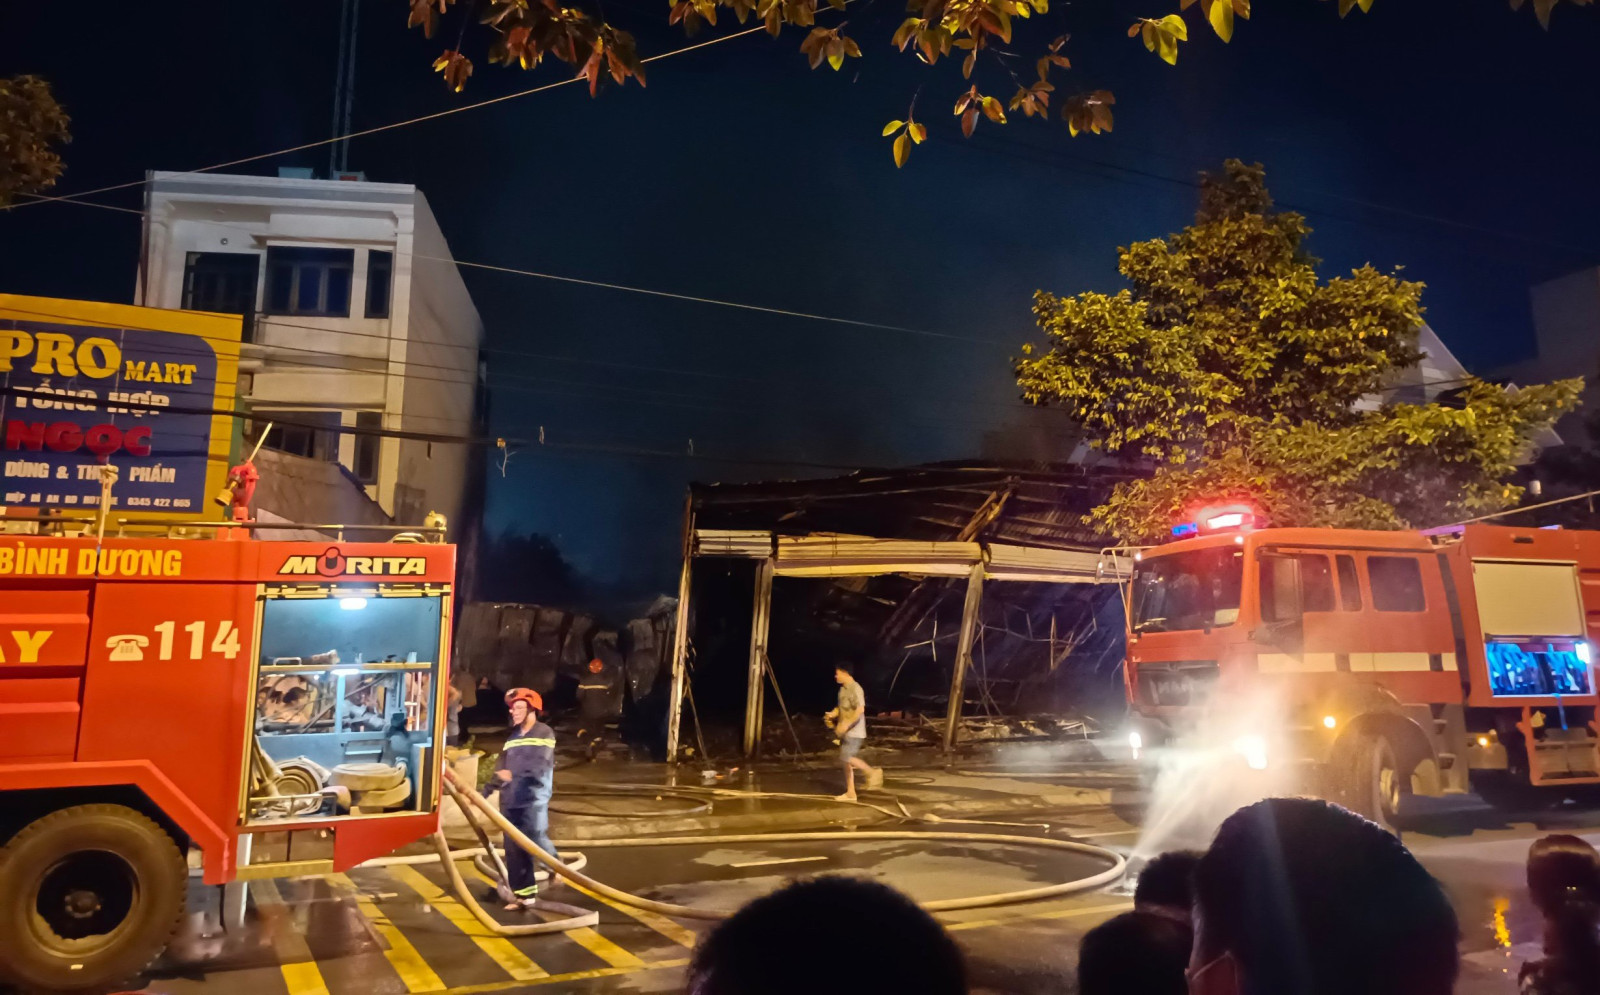 Điều tra nguyên nhân vụ cháy tại cửa hàng đồng giá ở Bình Dương ​ | baotintuc.vn